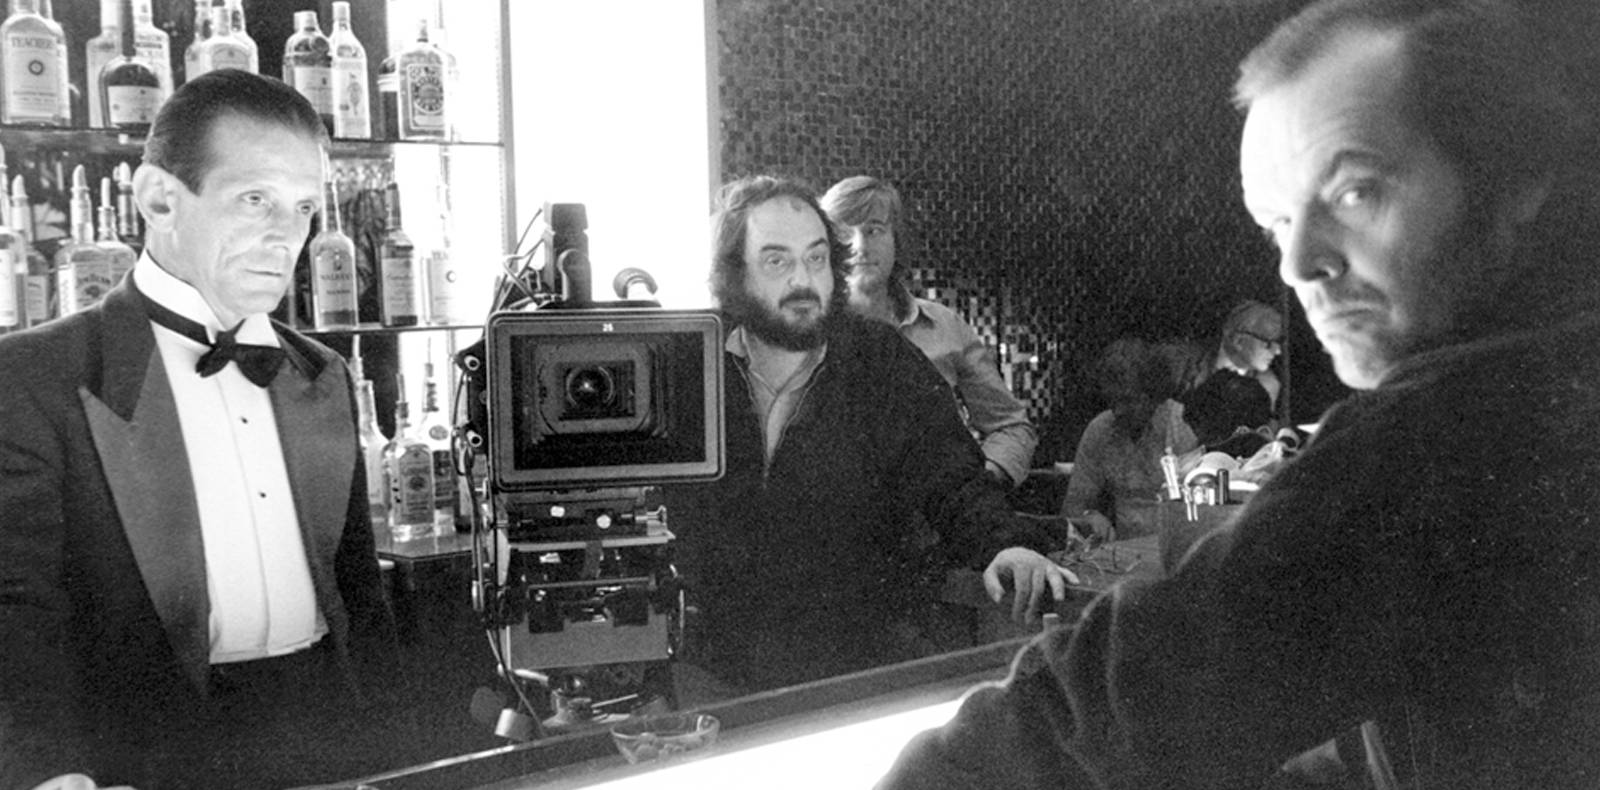 Joe Turkel (à gauche), Stanley Kubrick (au centre) et Jack Nicholson (à droite) sur le tournage de “The Shining”.